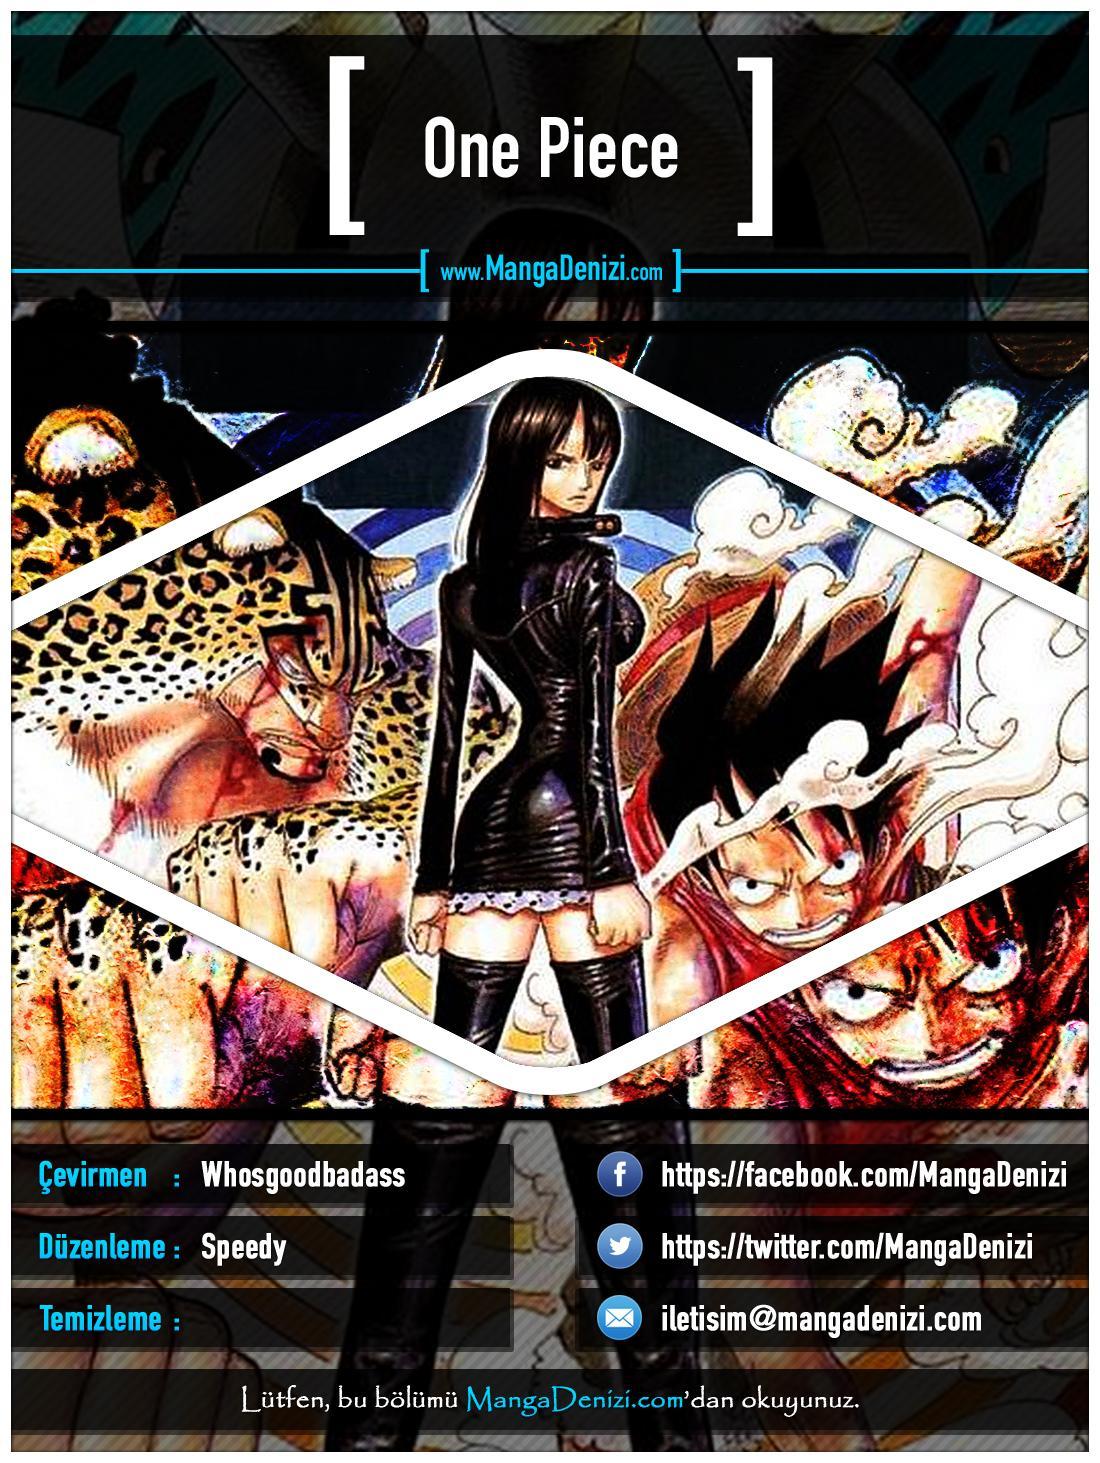 One Piece [Renkli] mangasının 0376 bölümünün 1. sayfasını okuyorsunuz.